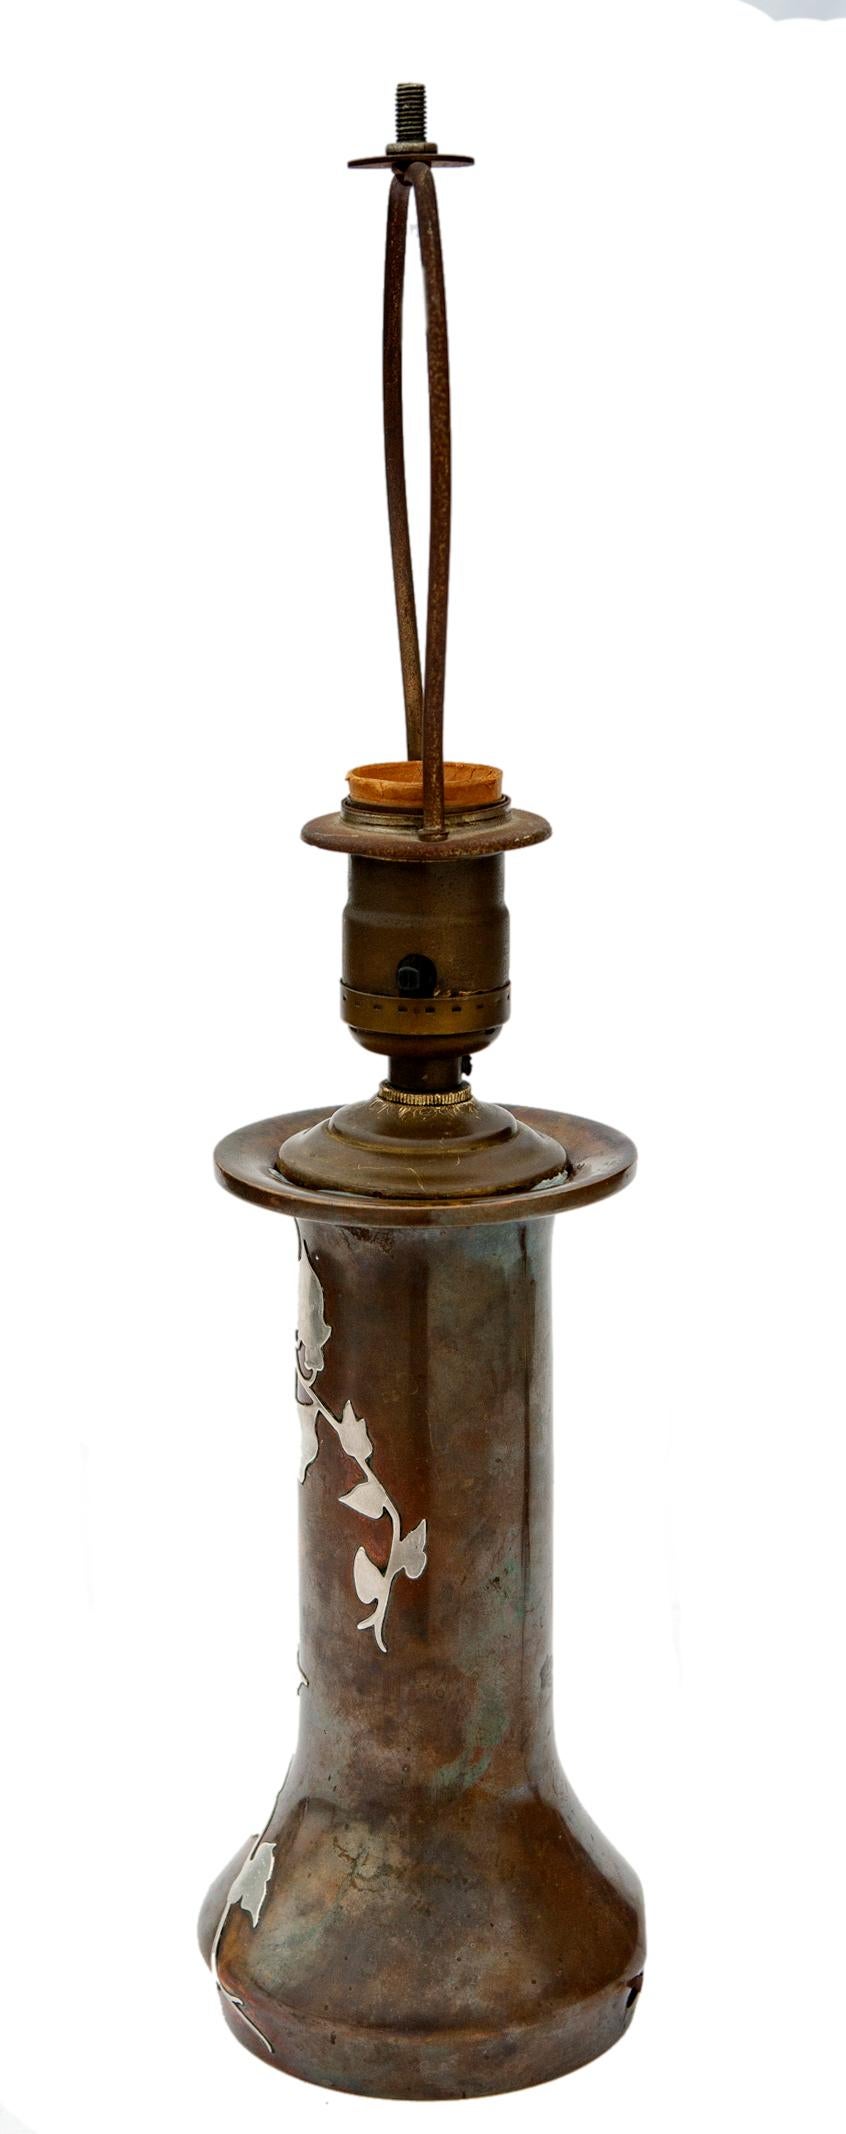 Vase du début du 20e siècle en bronze avec des vignes et des feuilles recouvertes d'argent sterling par le célèbre studio Arts & Crafts Heintz Metalworks.
Câblage refait à neuf pour une ampoule standard.